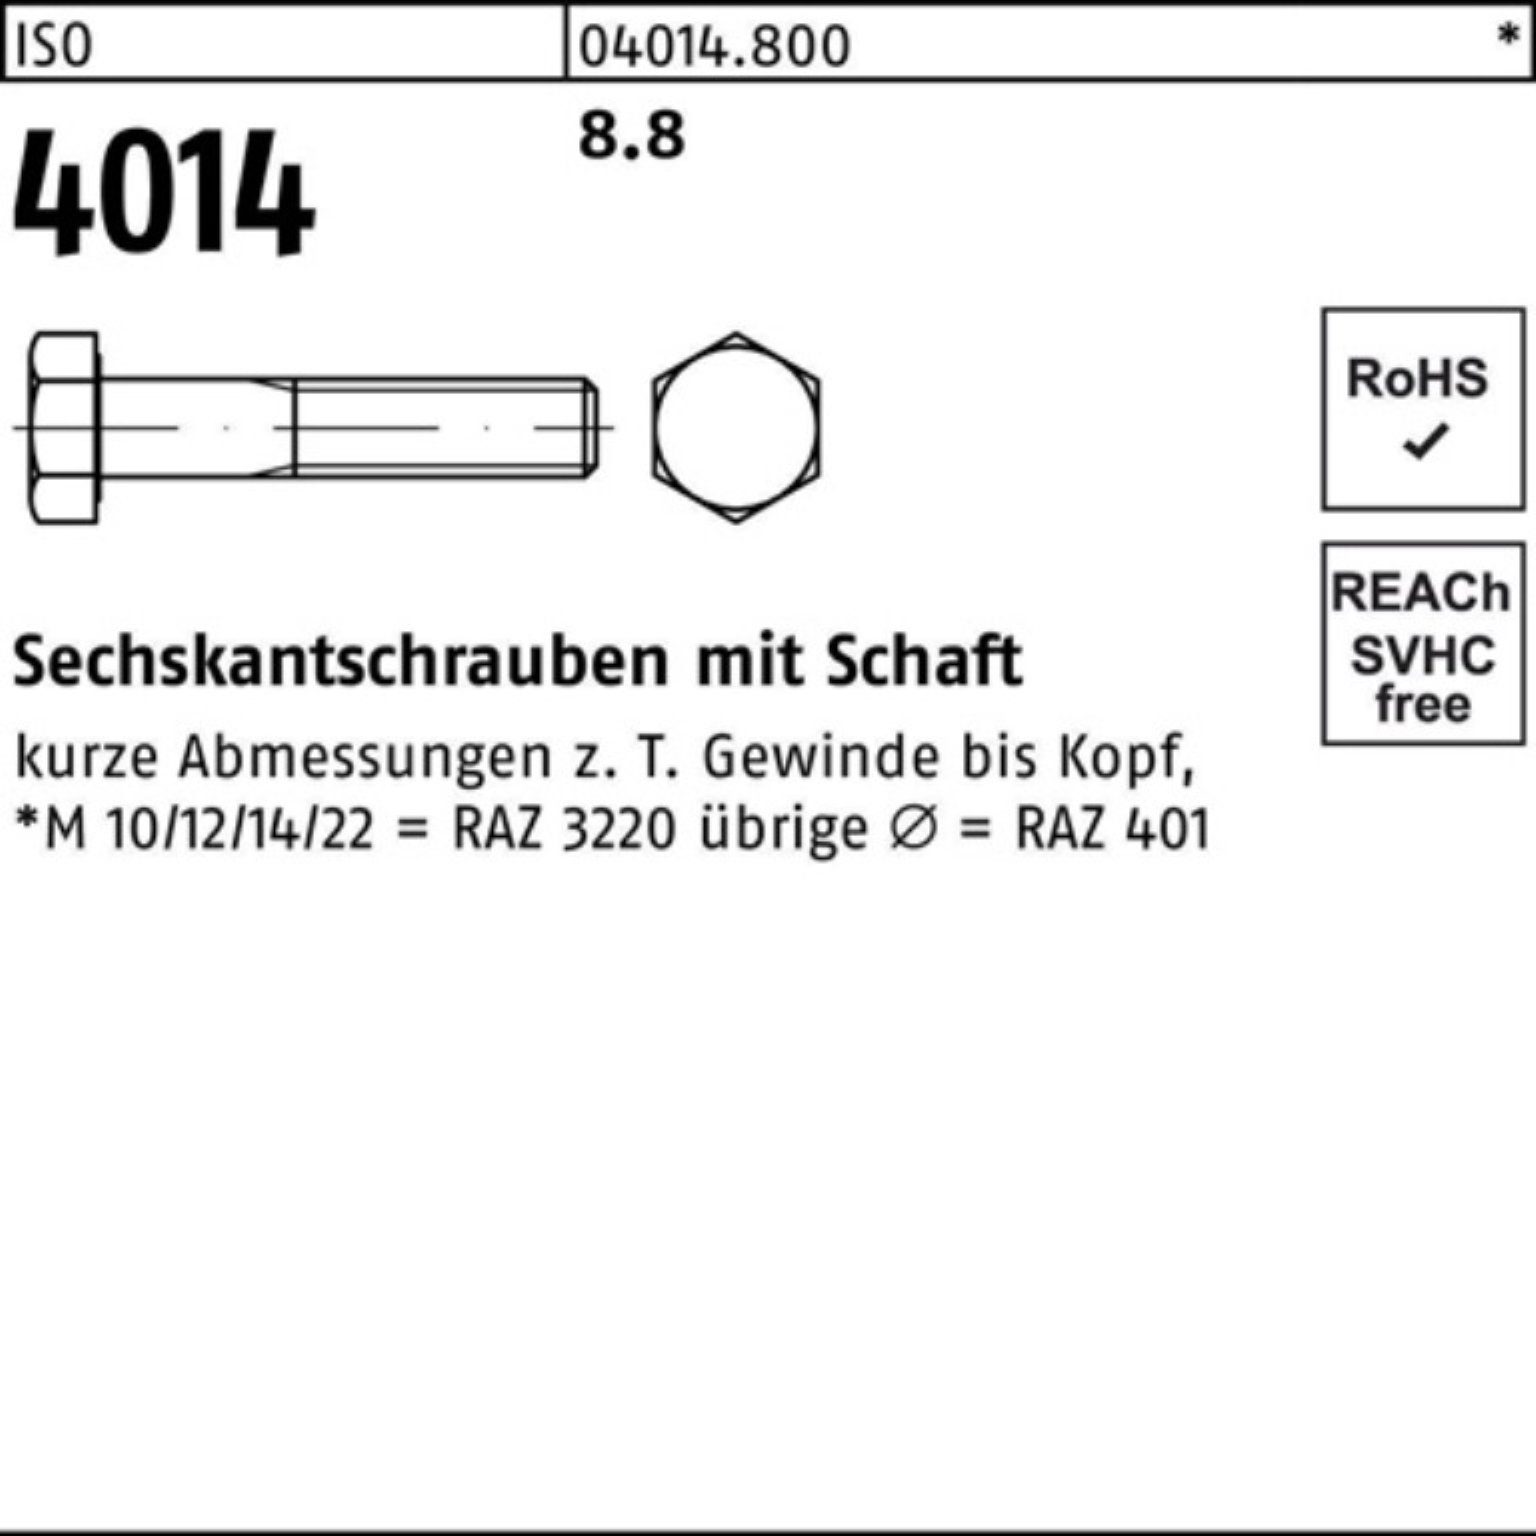 Bufab Sechskantschraube Schaft 100er Stück 4014 ISO ISO 1 8.8 140 Sechskantschraube M39x Pack